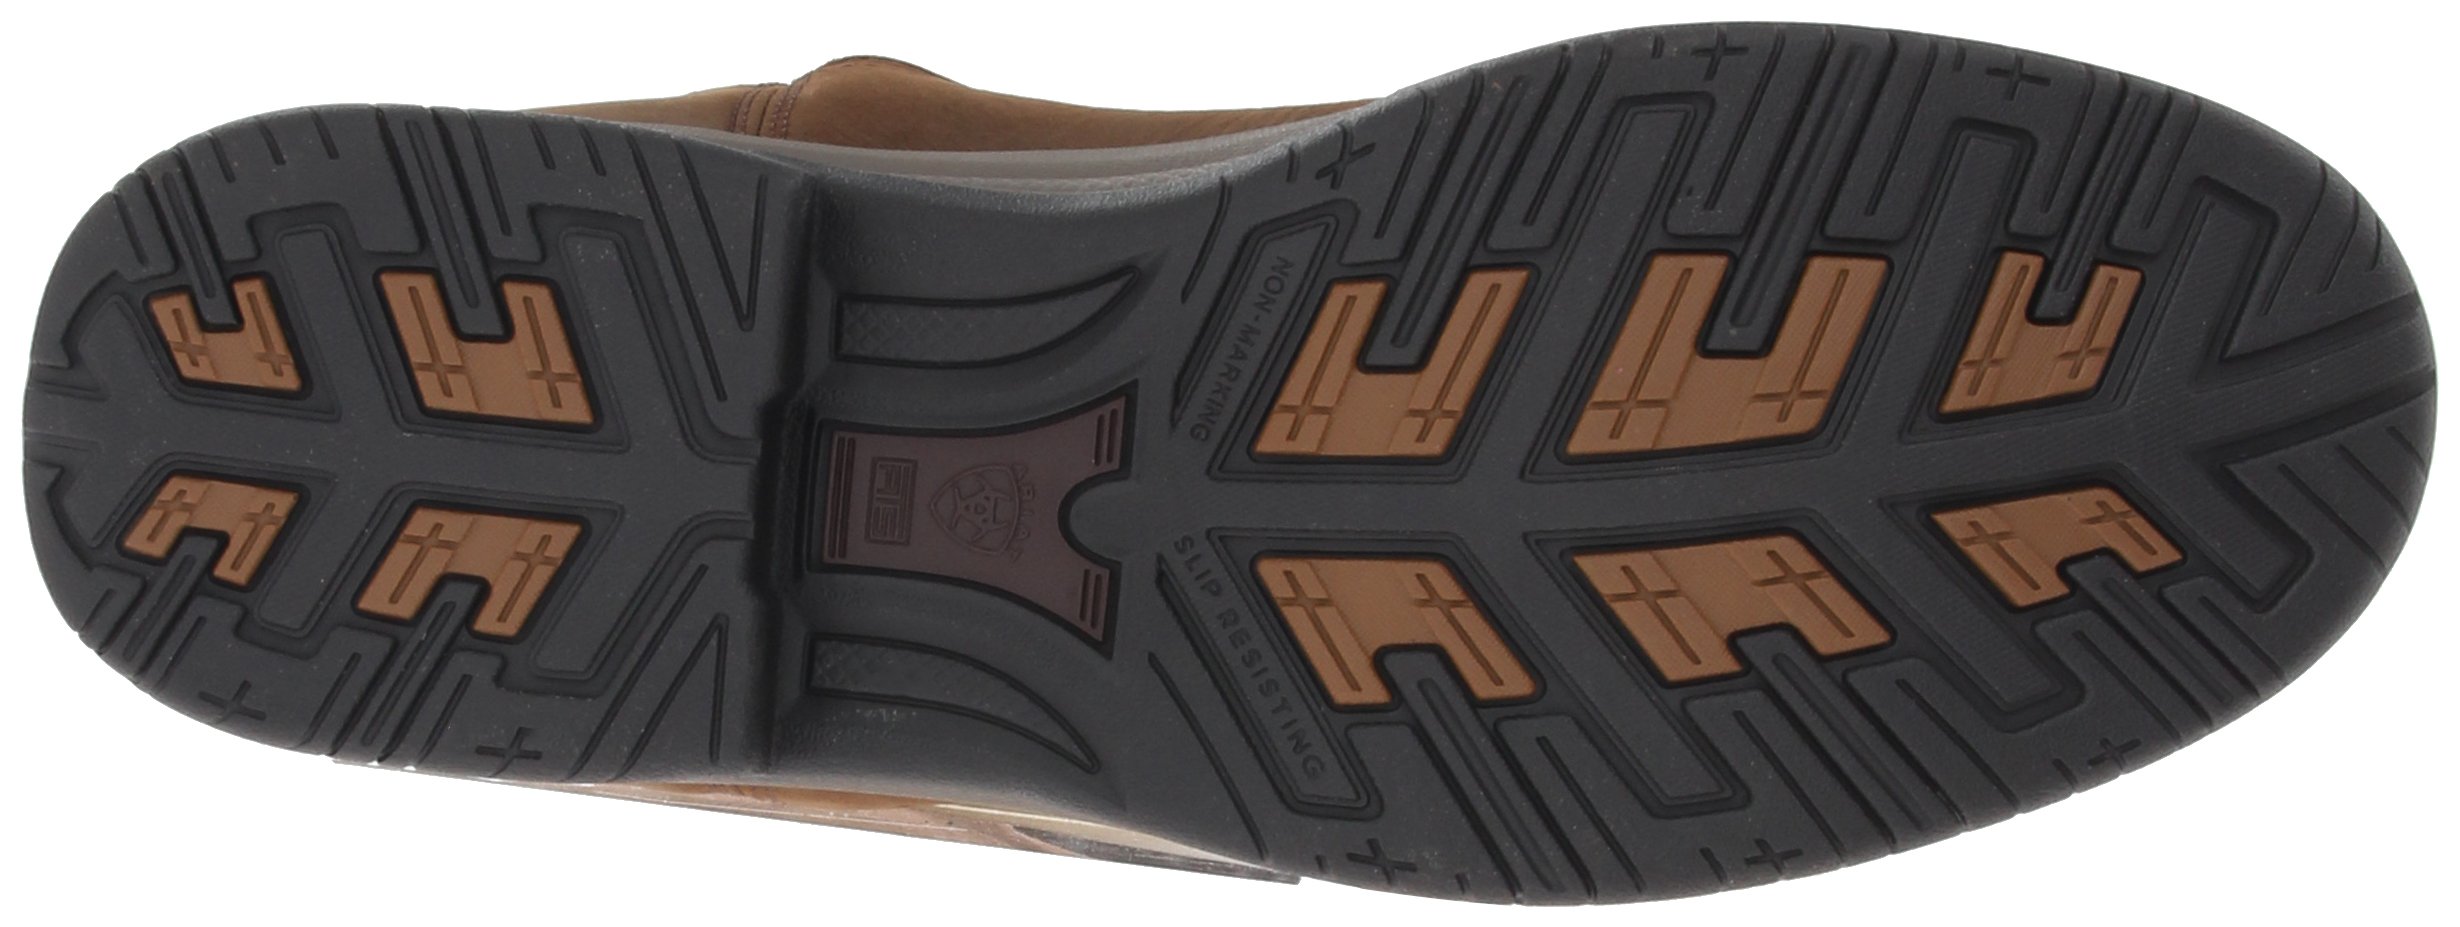 Ariat Terrain Waterproof Hiking Boot – Men’s Leather Waterproof Outdoor Hiking Boots